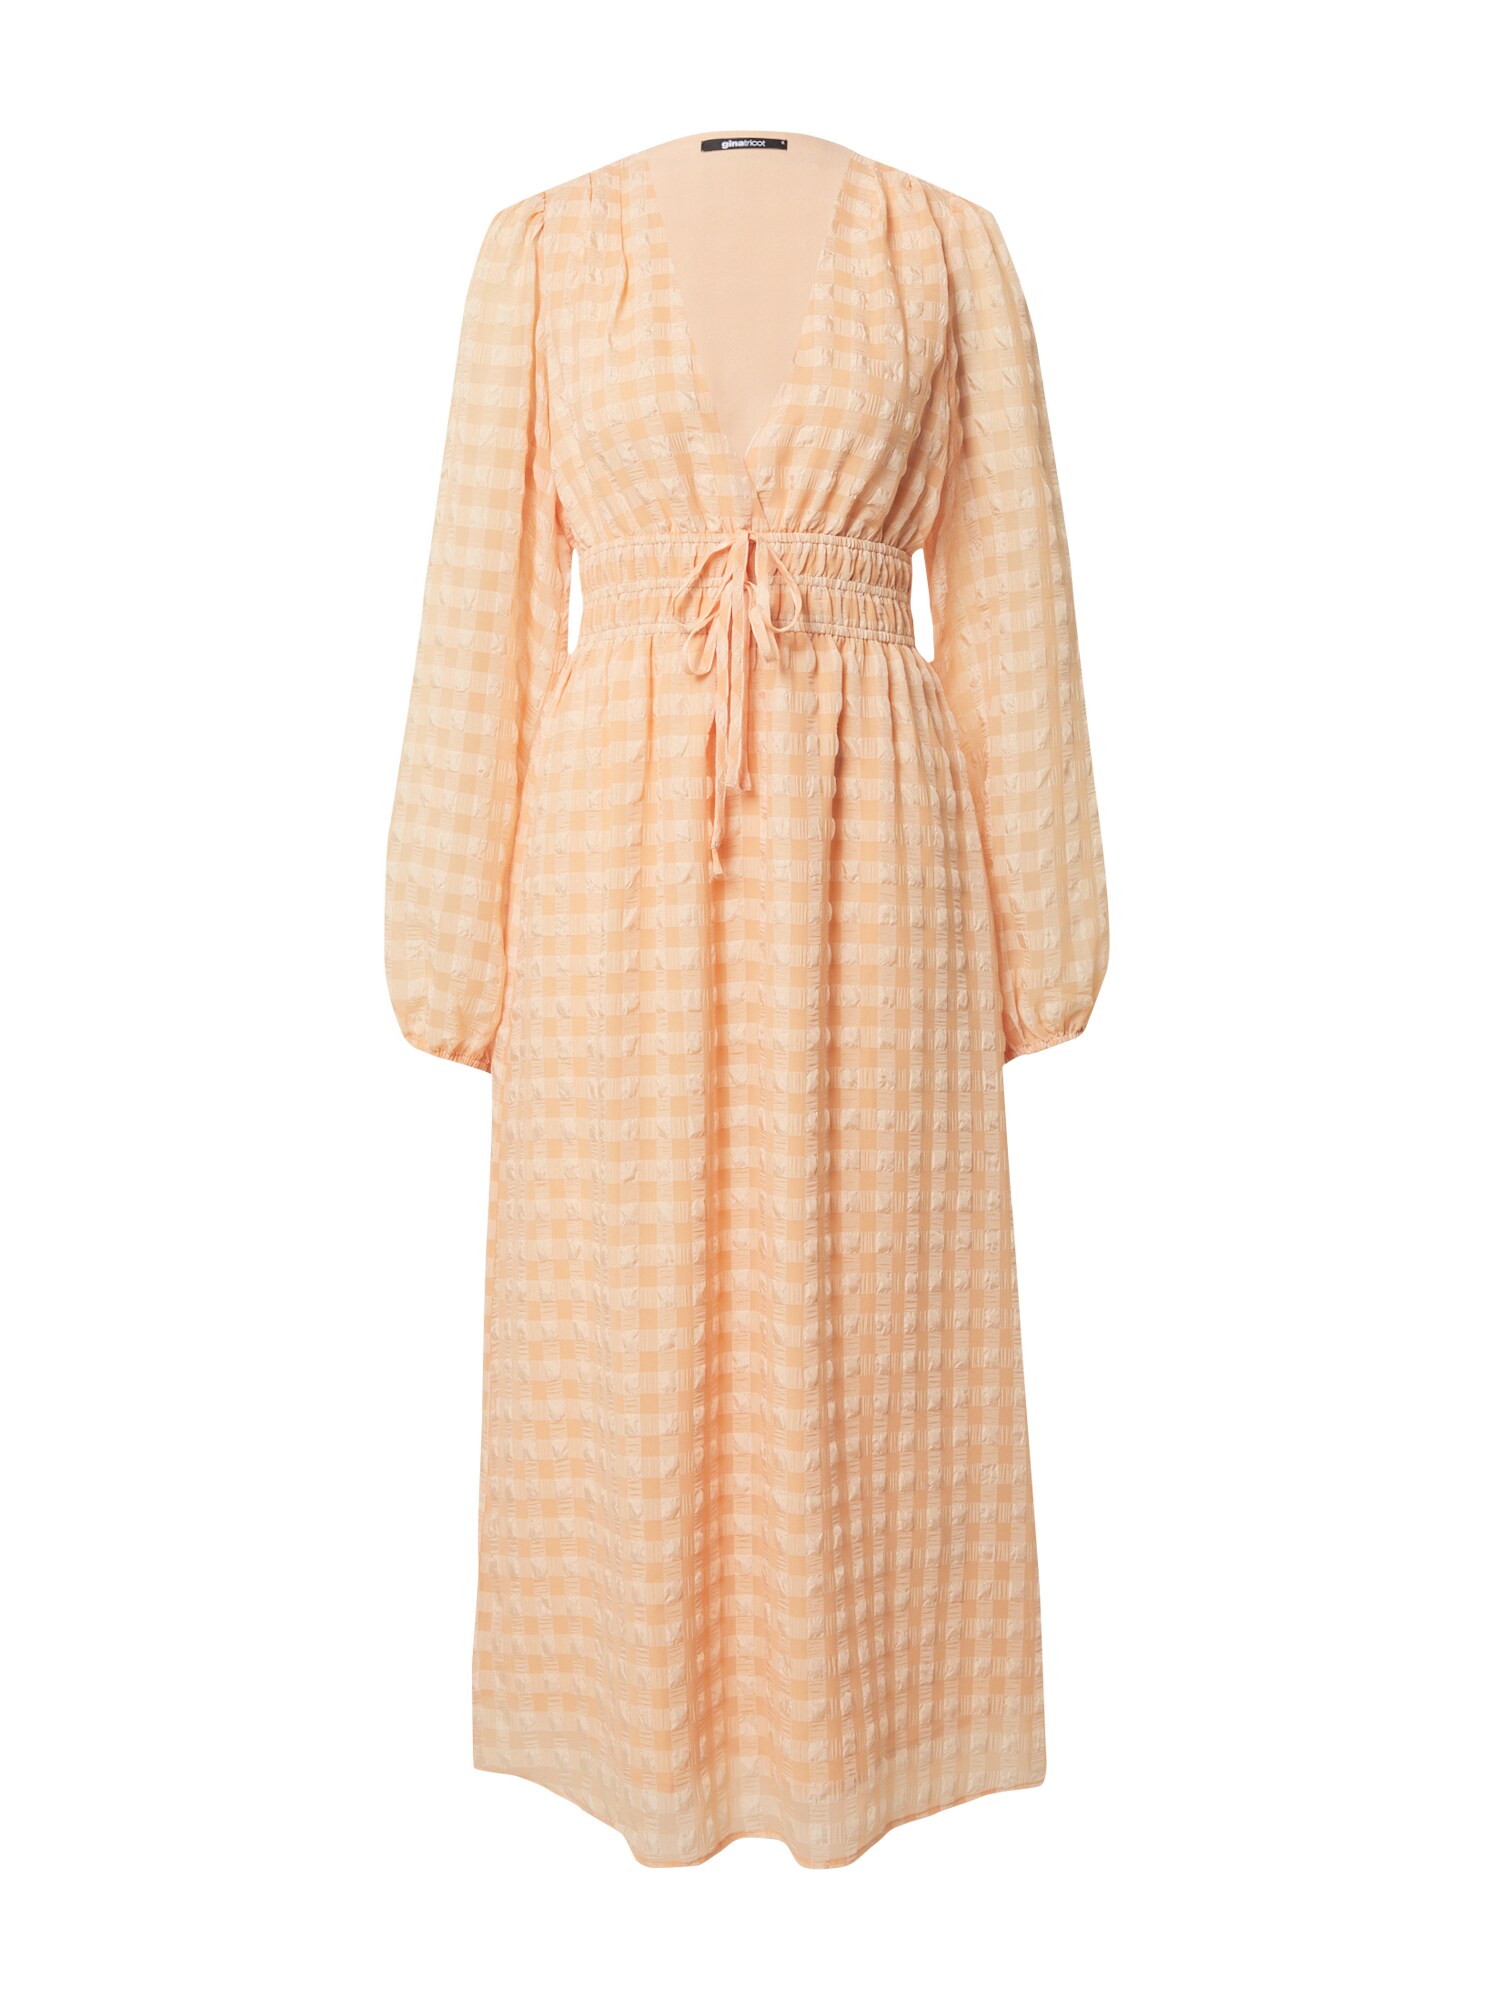 Šaty Misty marhuľová pastelovo oranžová Gina Tricot